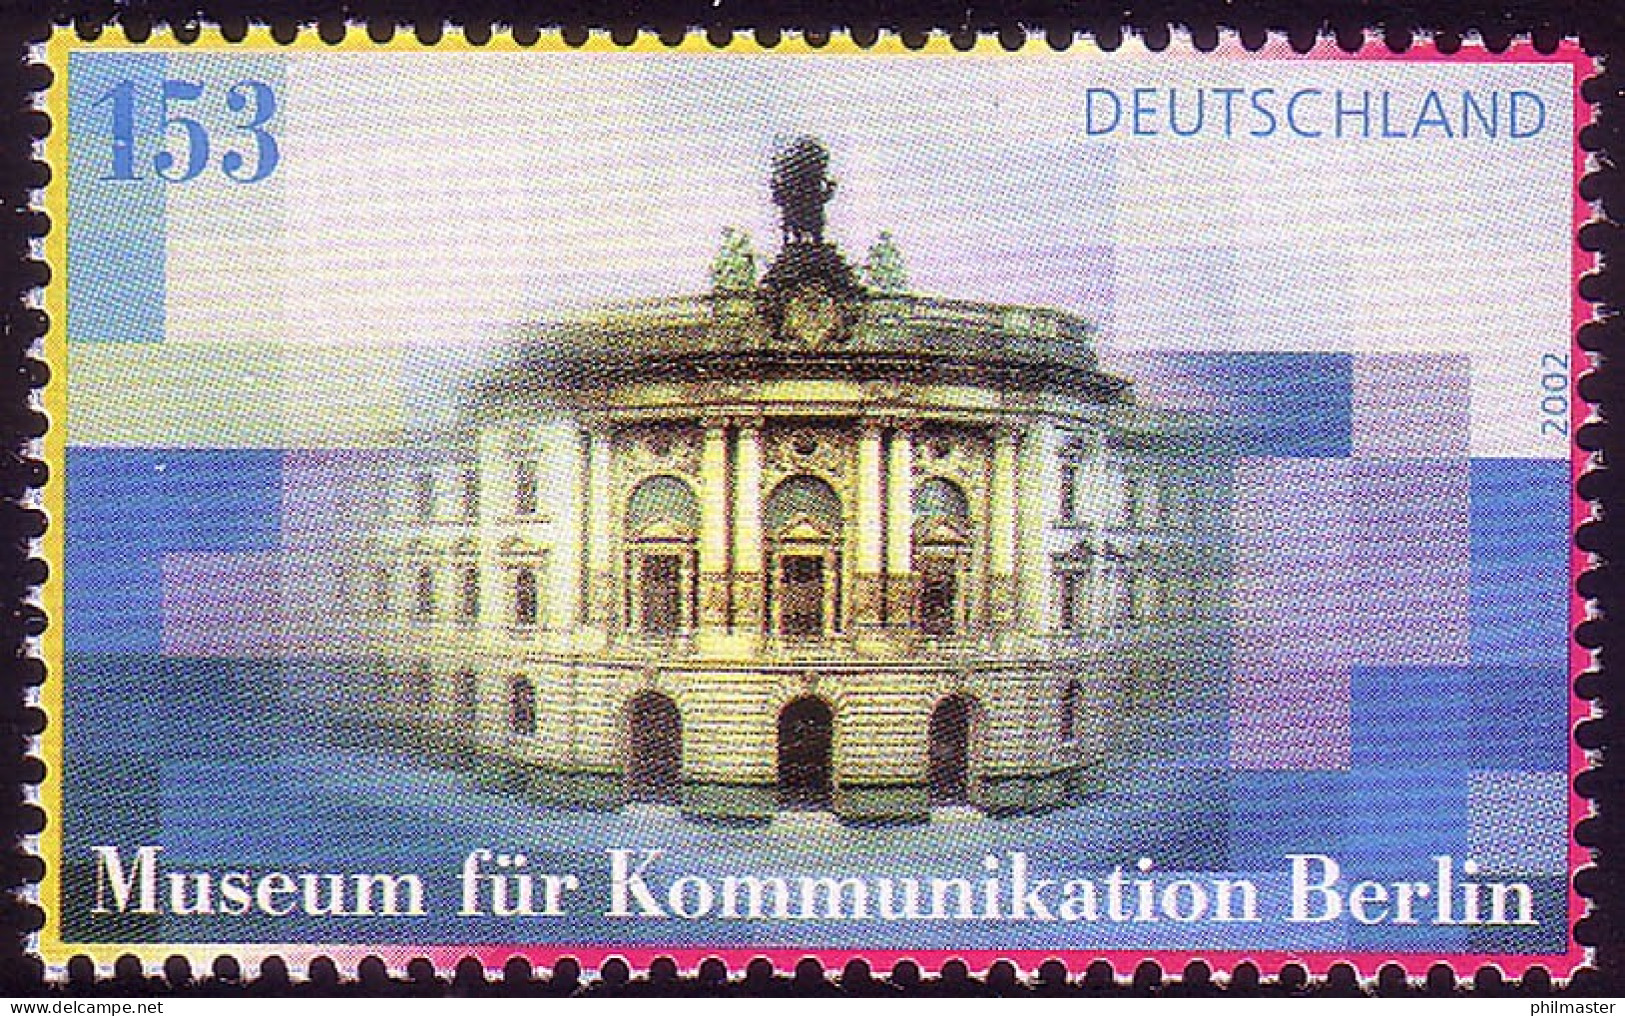 2276 Museum Für Kommunikation Berlin - 10 Einzelmarken, Alle ** / MNH - Nuevos